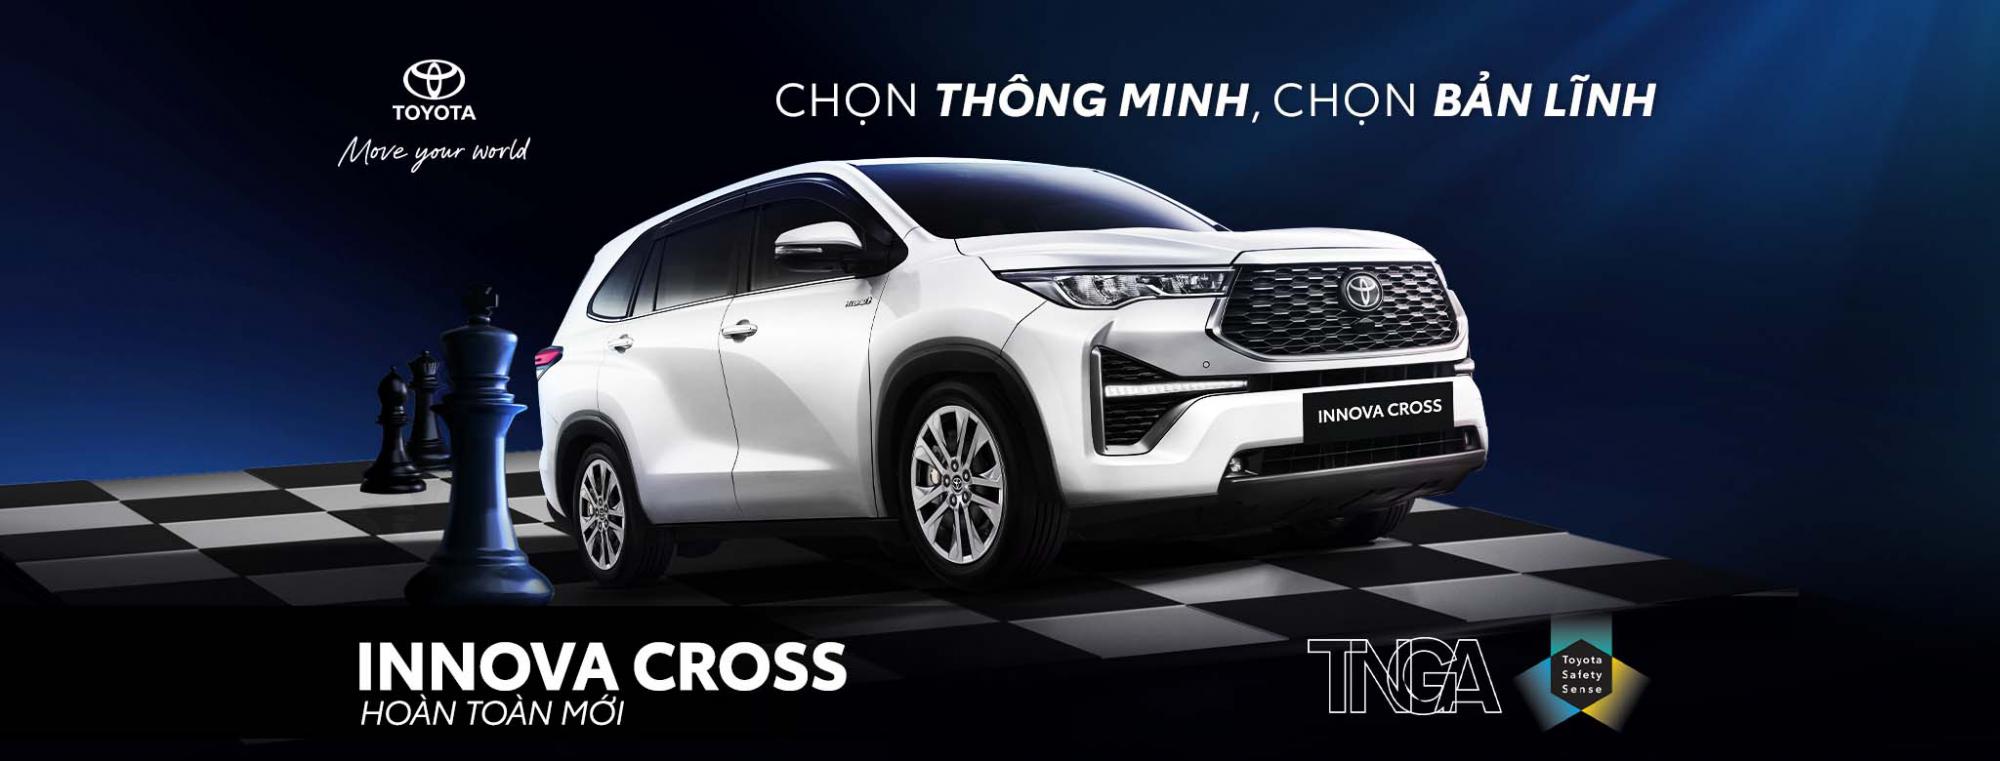 Toyota Hưng Yên giới thiệu Toyota Innova Cross hoàn toàn mới